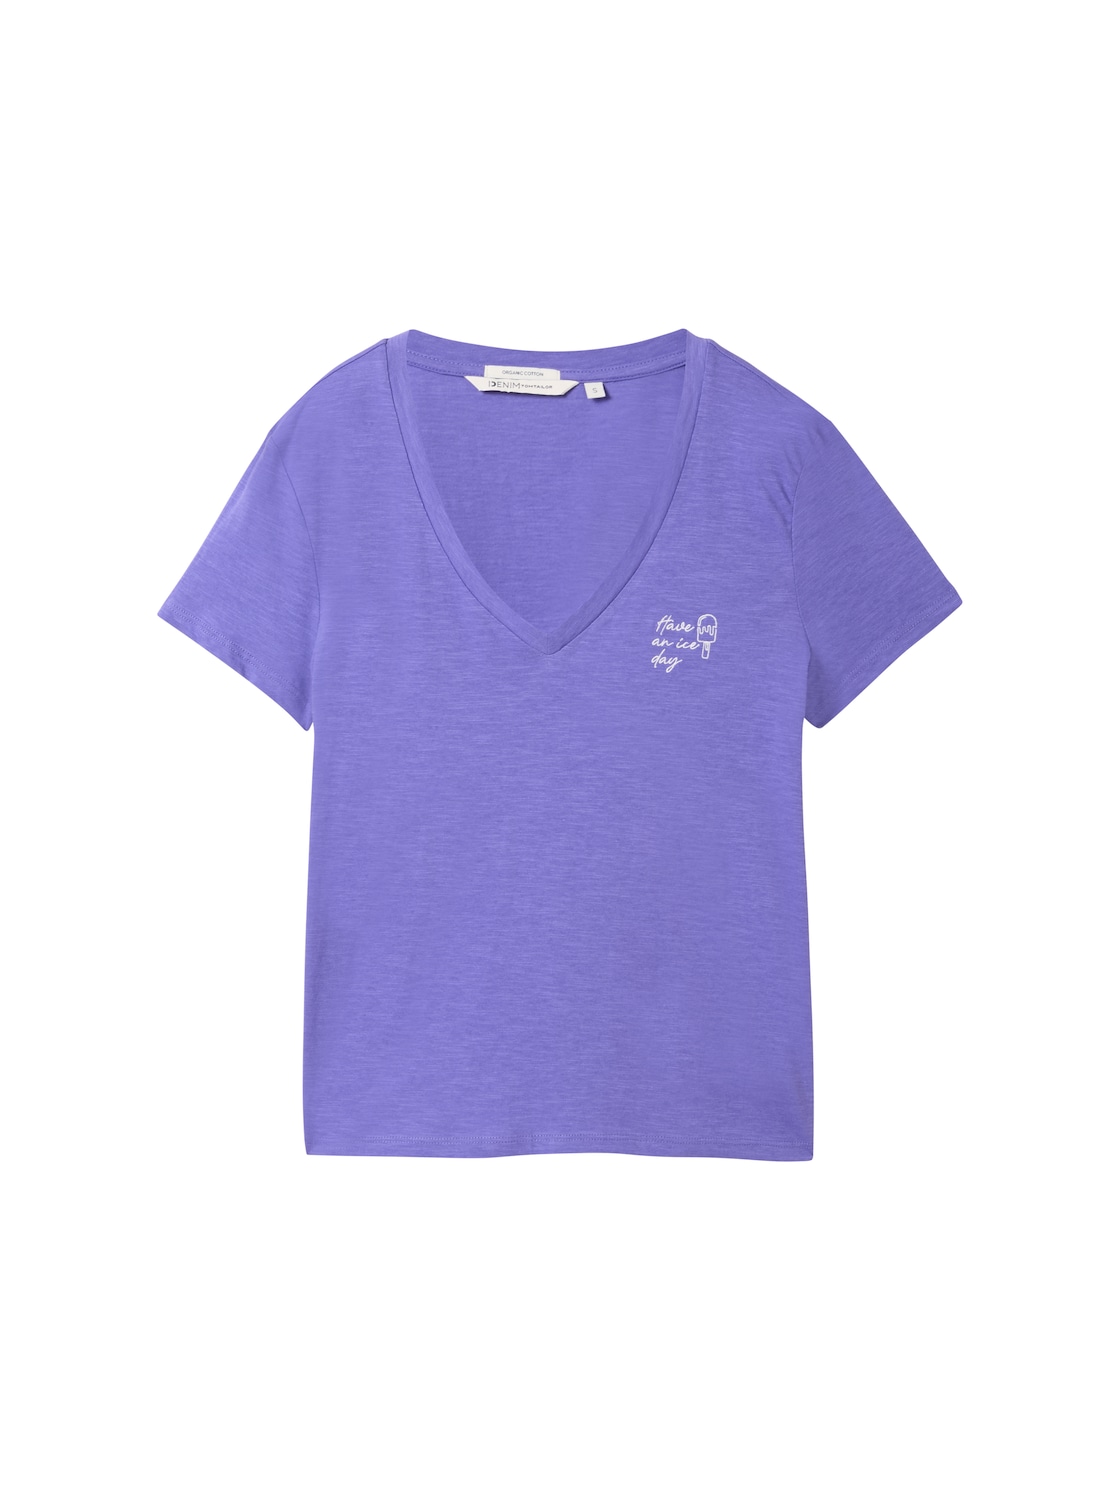 TOM TAILOR DENIM Damen T-Shirt aus Bio-Baumwolle, lila, Uni, Gr. XL von Tom Tailor Denim